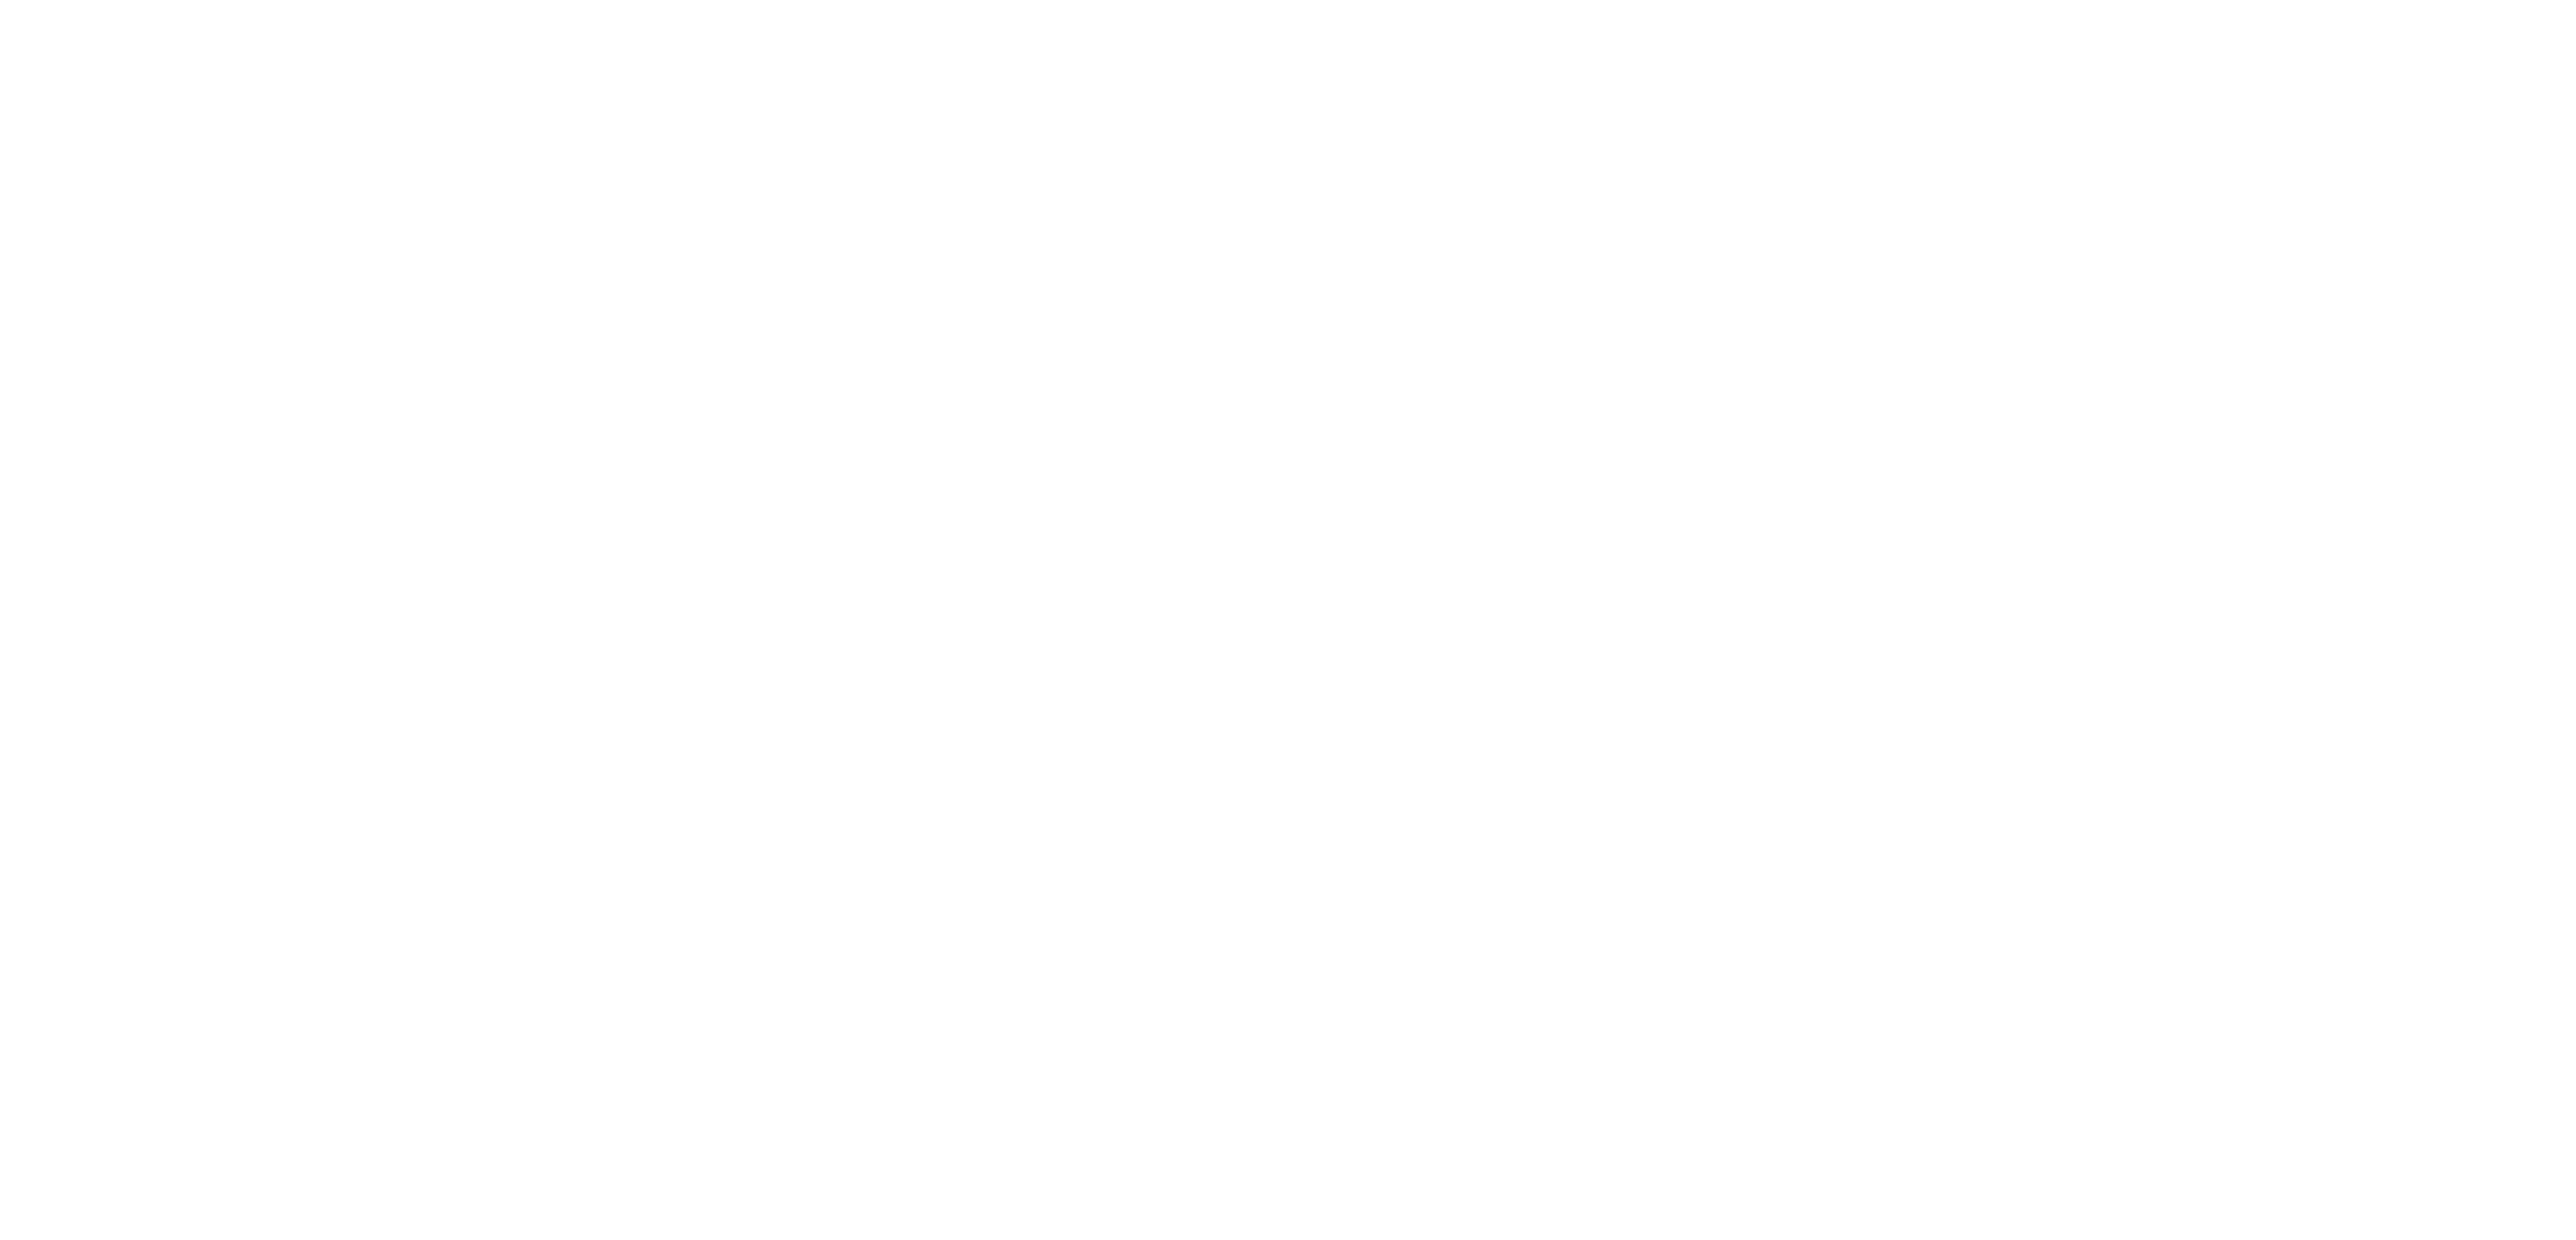 Zürcher Filmorchester